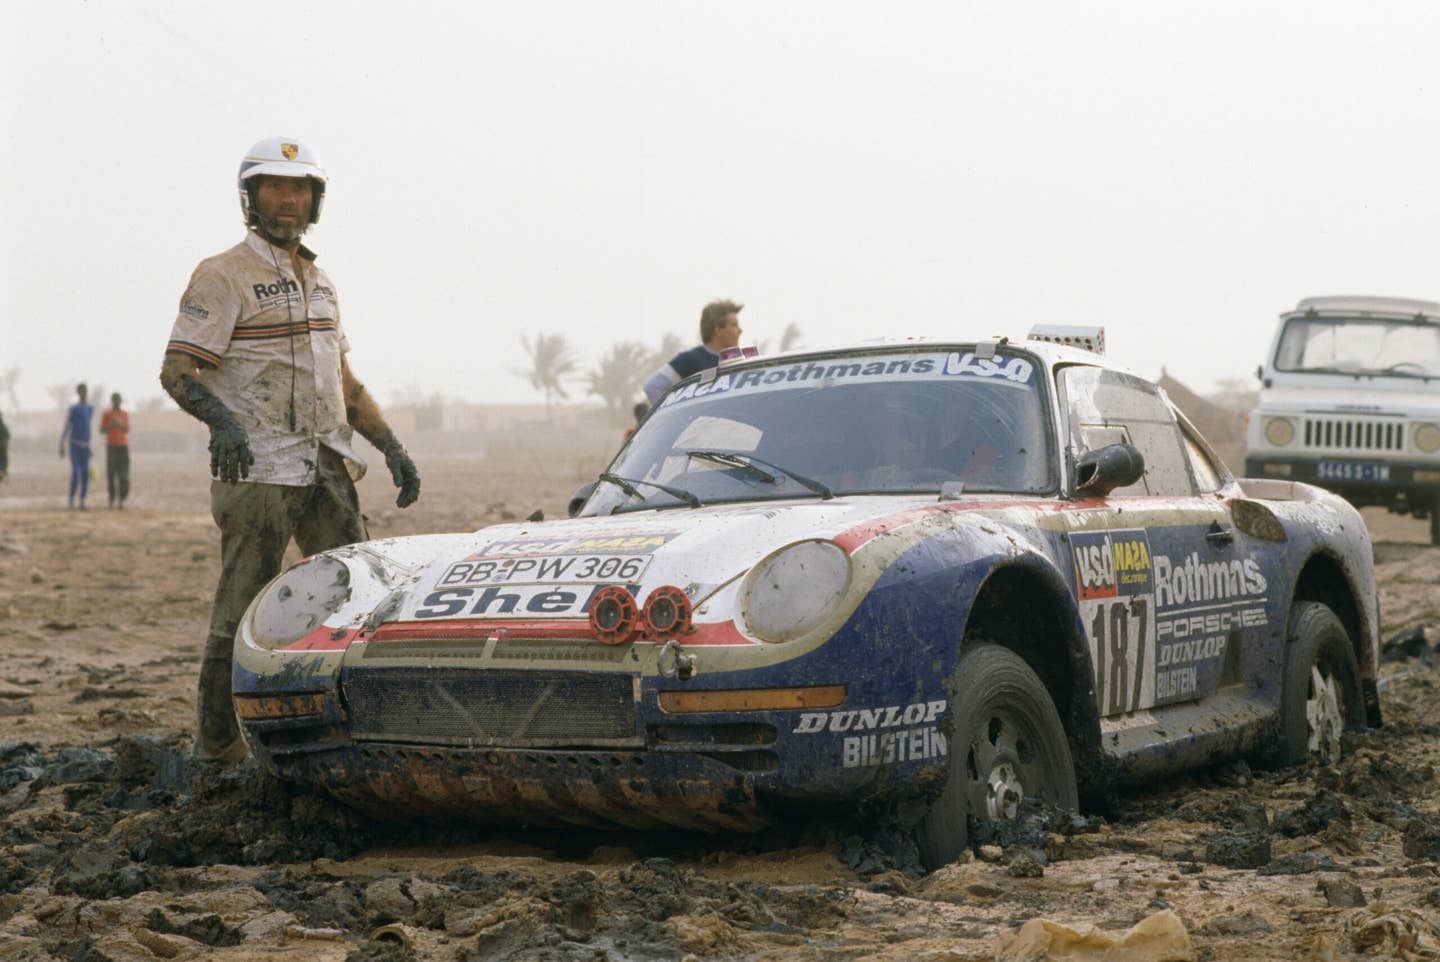 Concurent auto du rallye Paris-Dakar Roland Kussmaul sur la Porsche 187 lors de l'étape entre Boutilimit (Mauritanie) et Saint-Louis, le 20 janvier 1986, Sénégal. (Photo by Jean GUICHARD/Gamma-Rapho via Getty Images)